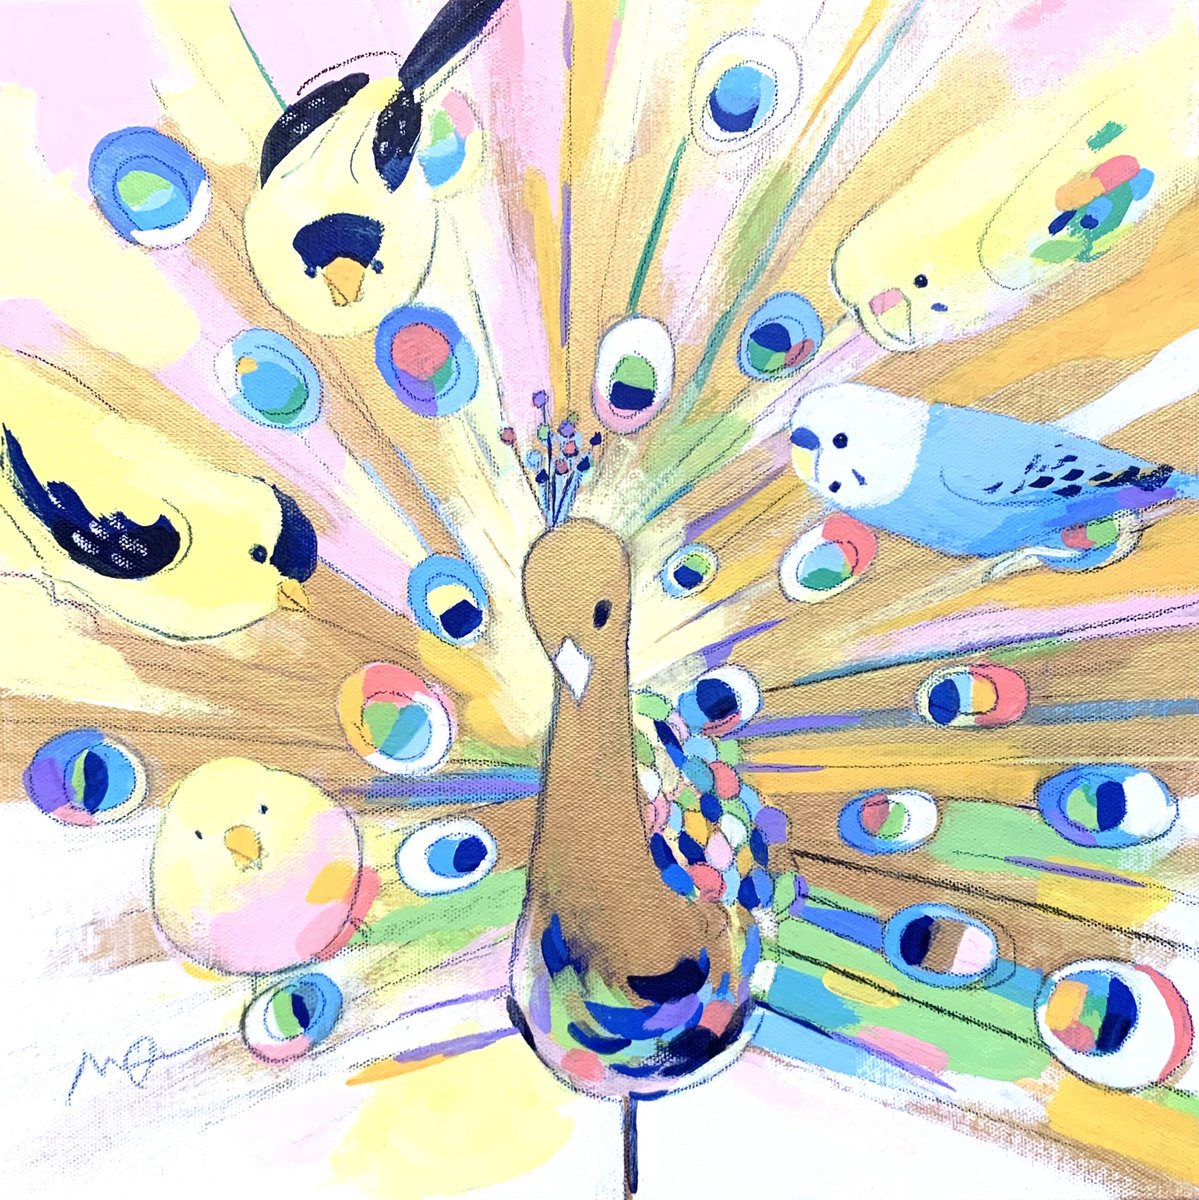 「個展出品作品紹介⑨ 「自ら光る」S4キャンバス 金色虹色に輝くクジャク・ゴールド」|オクムラミチヨのイラスト